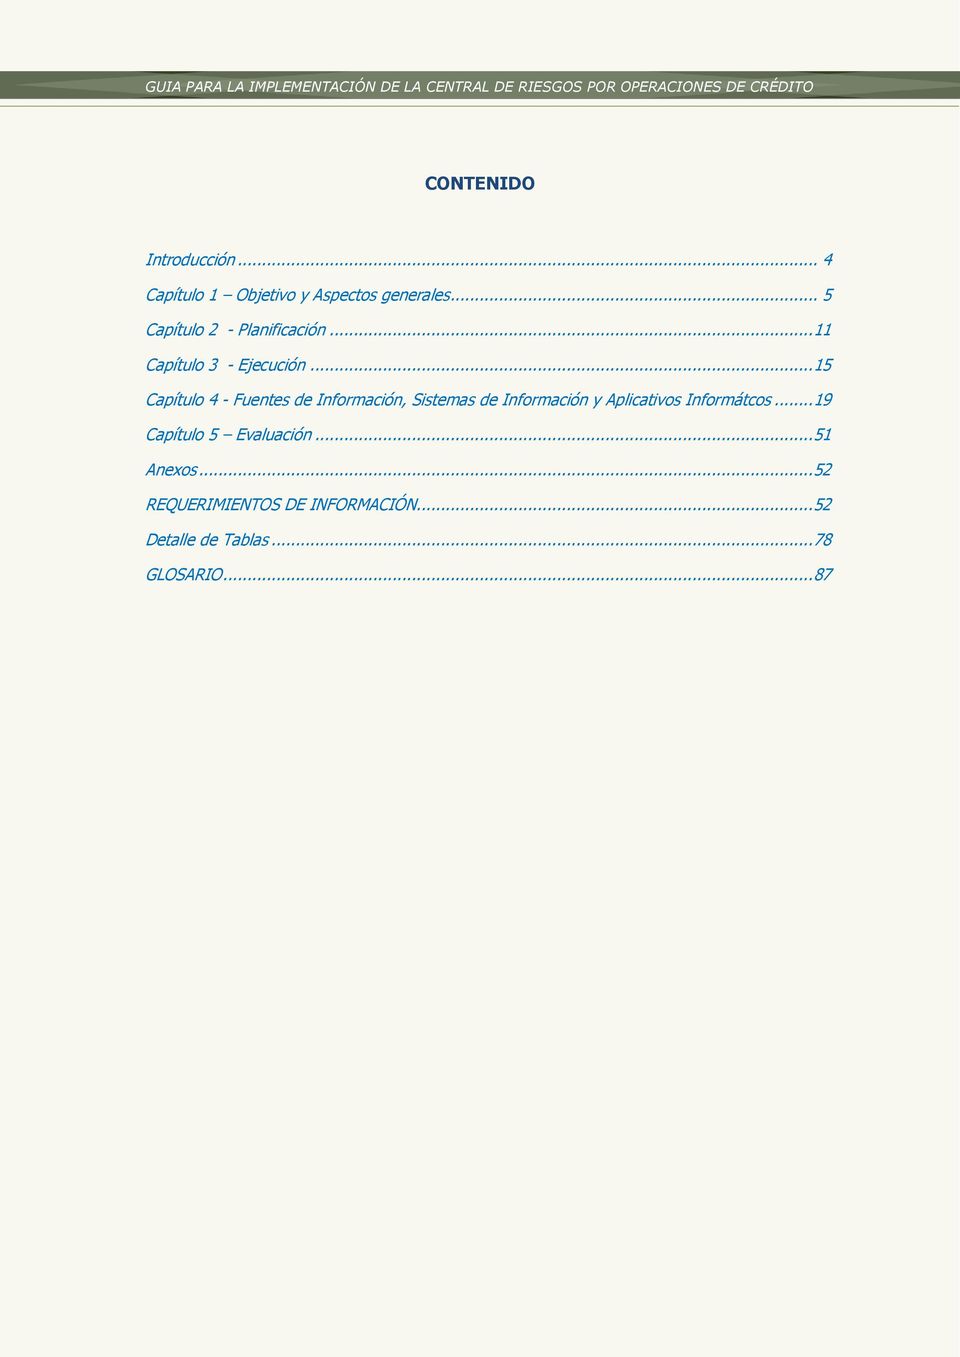 .. 15 Capítulo 4 - Fuentes de Información, Sistemas de Información y Aplicativos